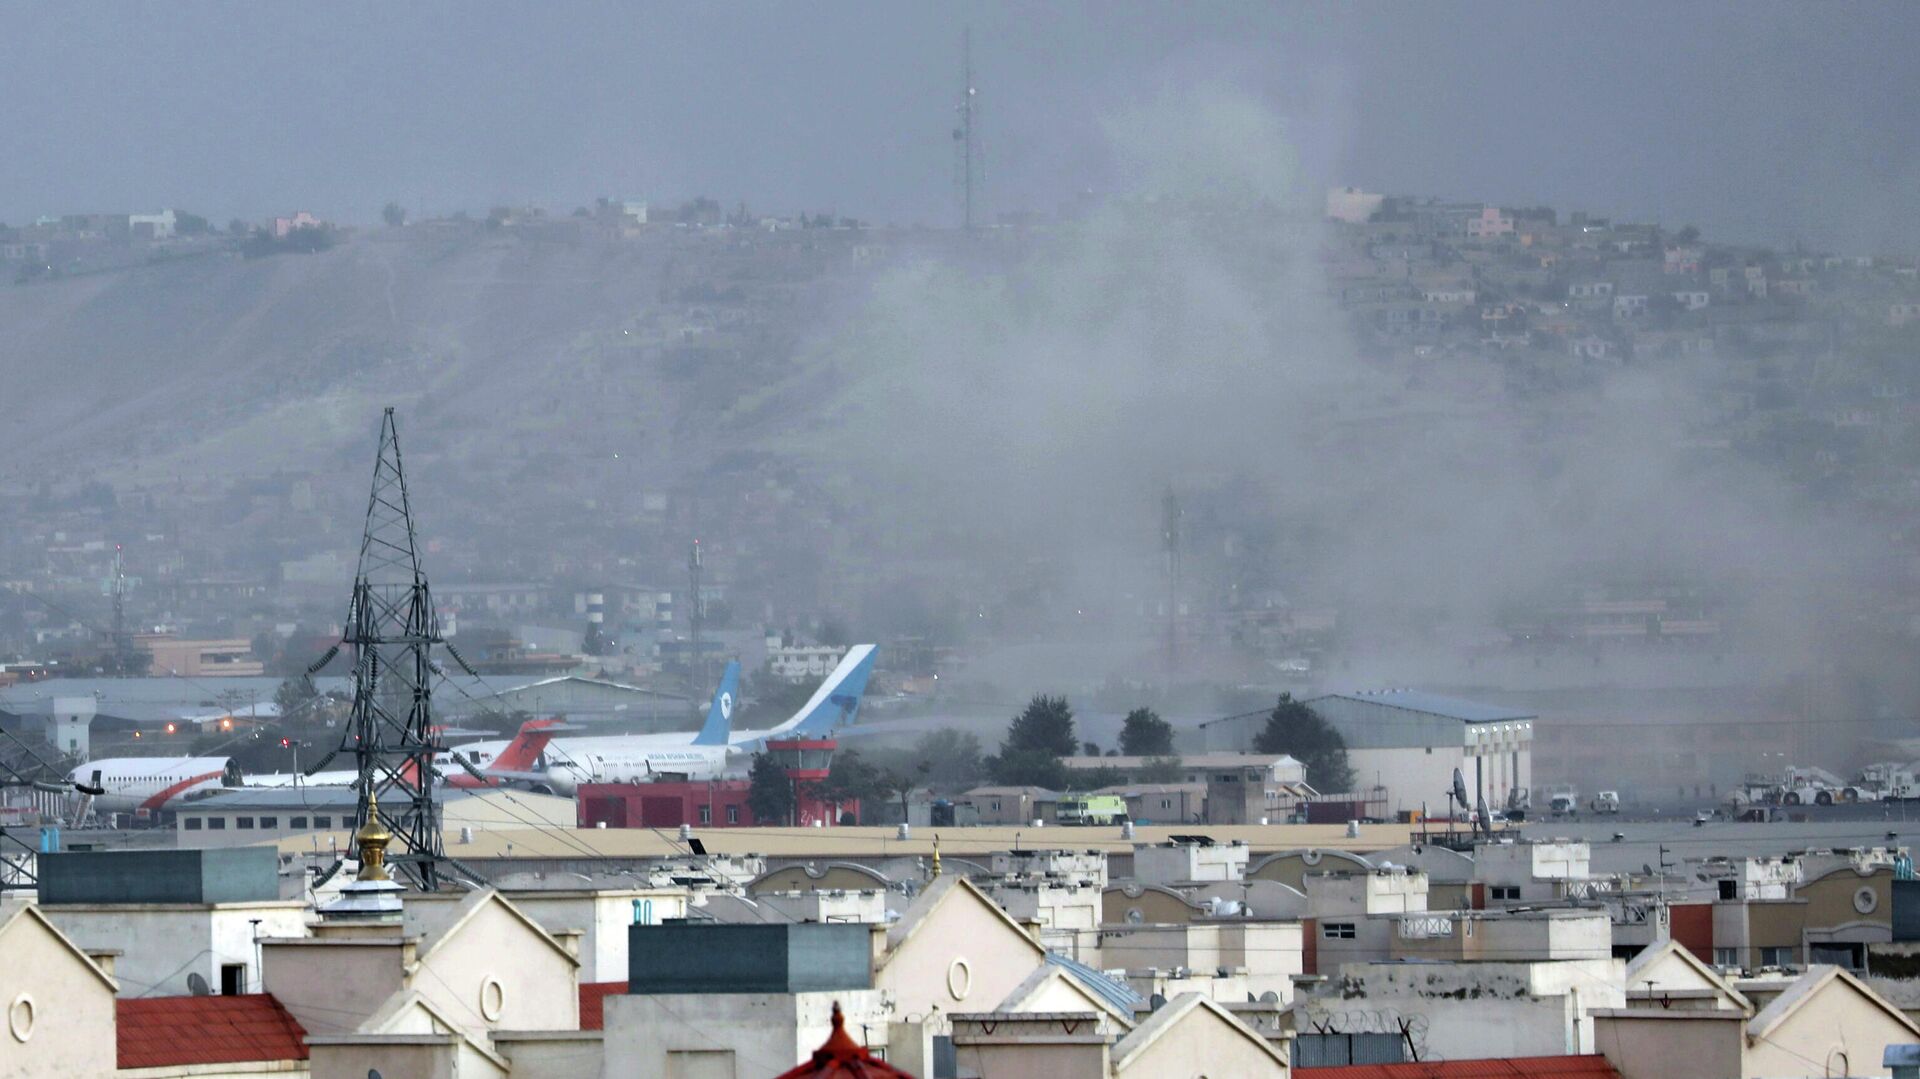  Около аэропорта в Кабуле прогремели три взрыва, Афганистан - РИА Новости, 1920, 27.08.2021